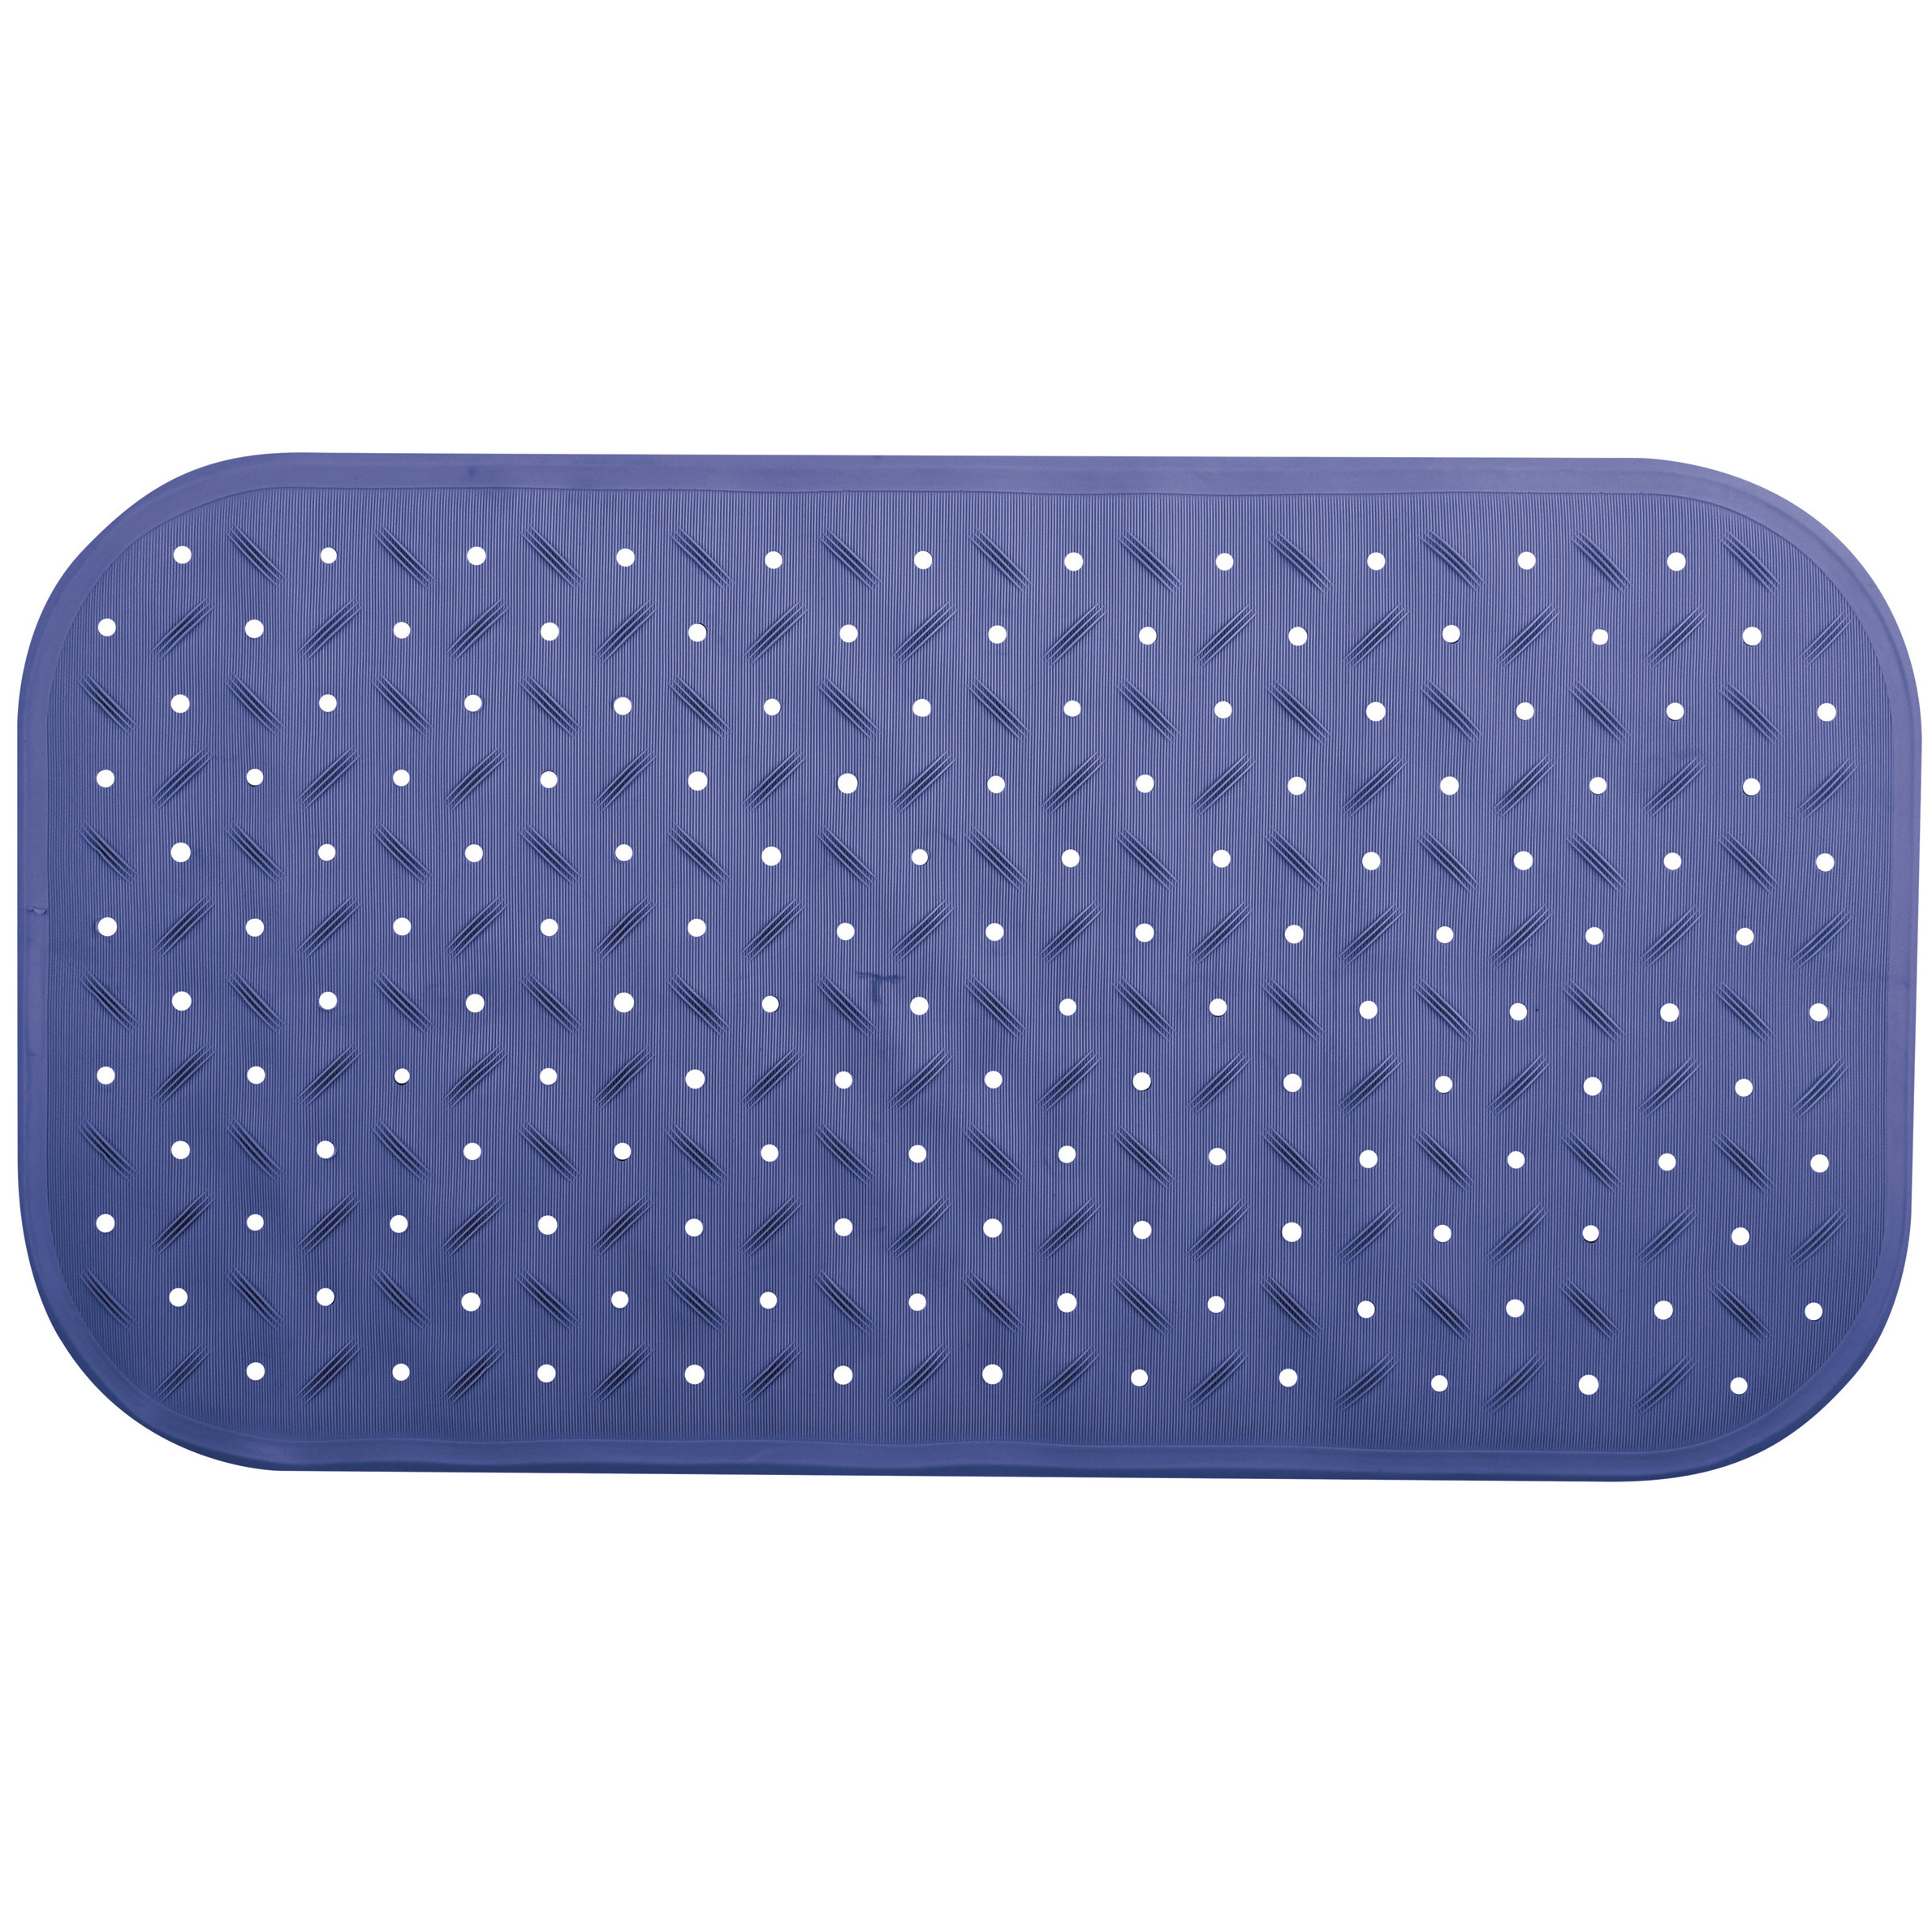 Douche-bad anti-slip mat badkamer rubber blauw 36 x 65 cm rechthoek